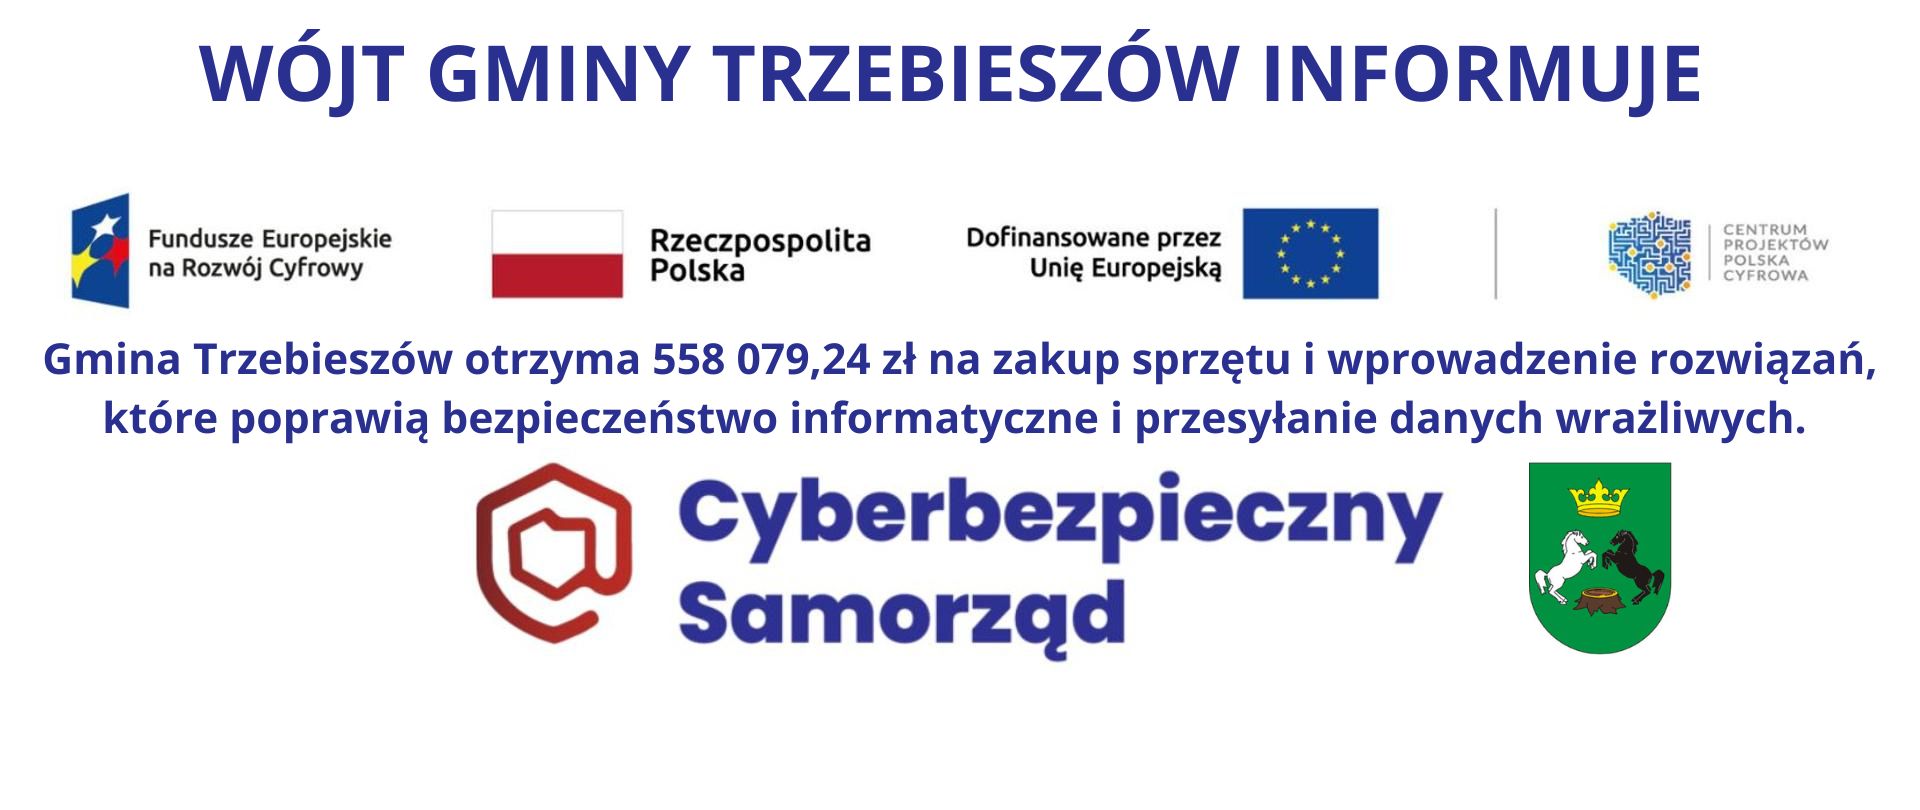 „Cyberbezpieczny Samorząd” – nowoczesne rozwiązania cyberbezpieczeństwa w Gminie Trzebieszów za ponad 0,5 mln zł